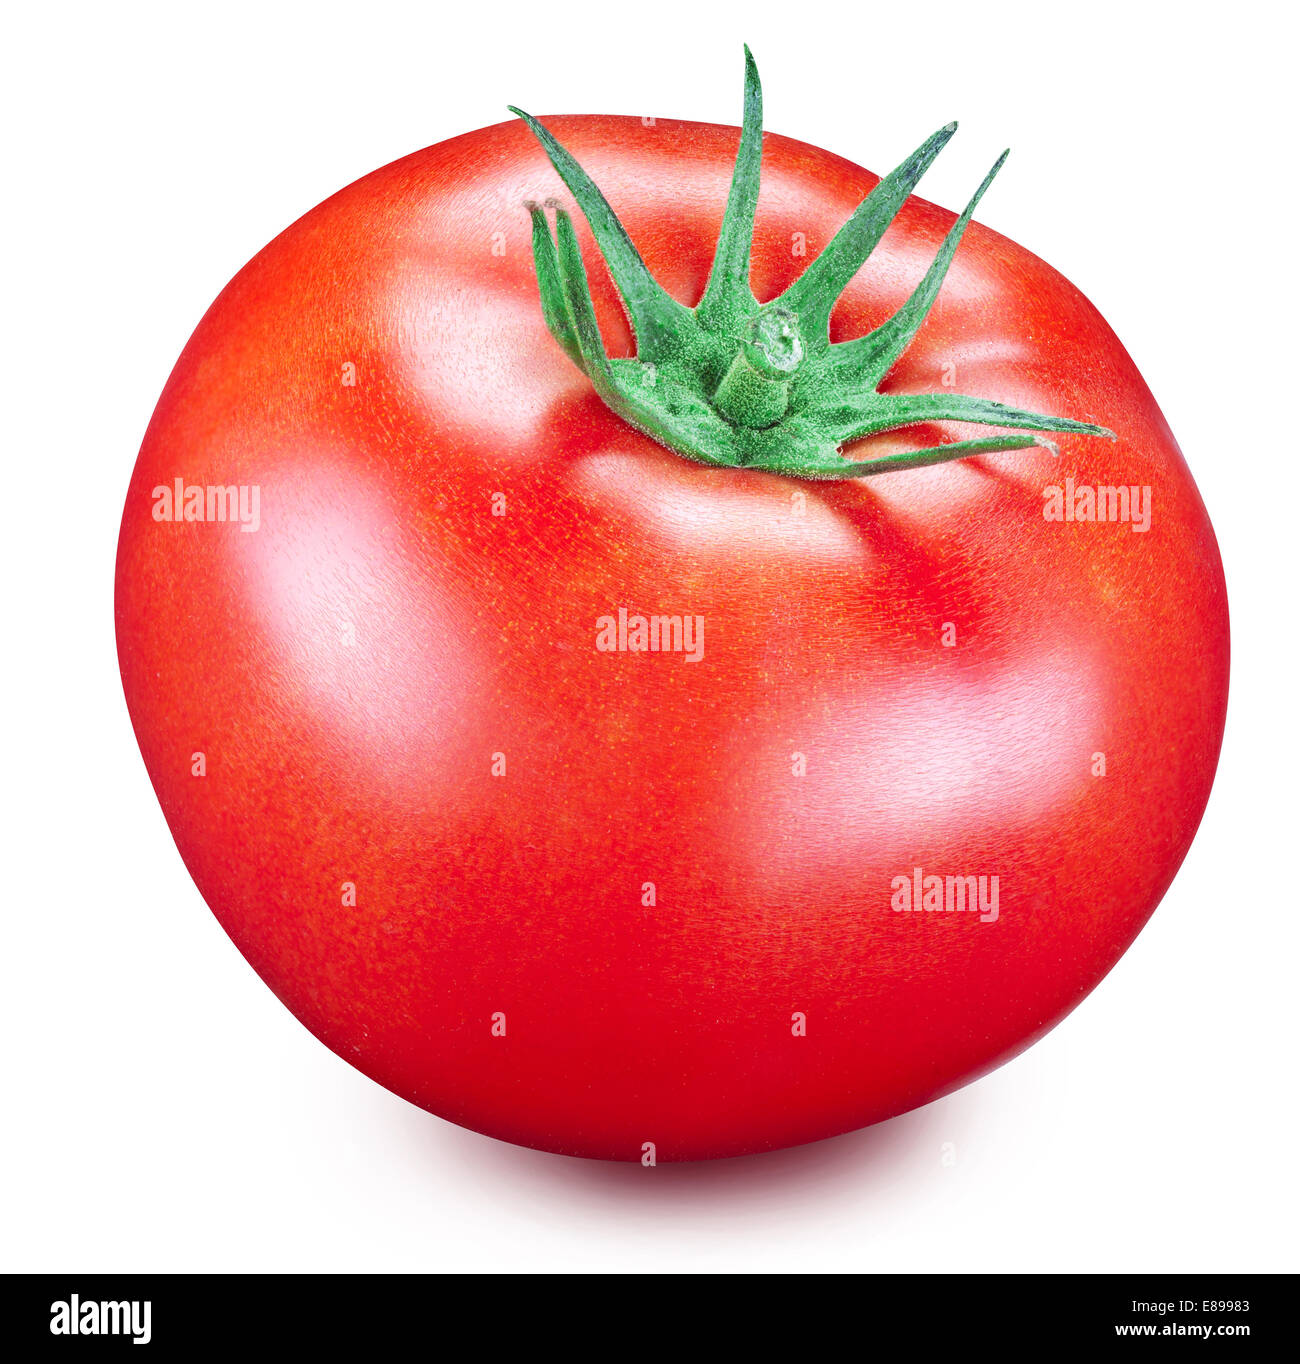 Tomaten auf einem weißen Hintergrund. Datei enthält Beschneidungspfade. Stockfoto